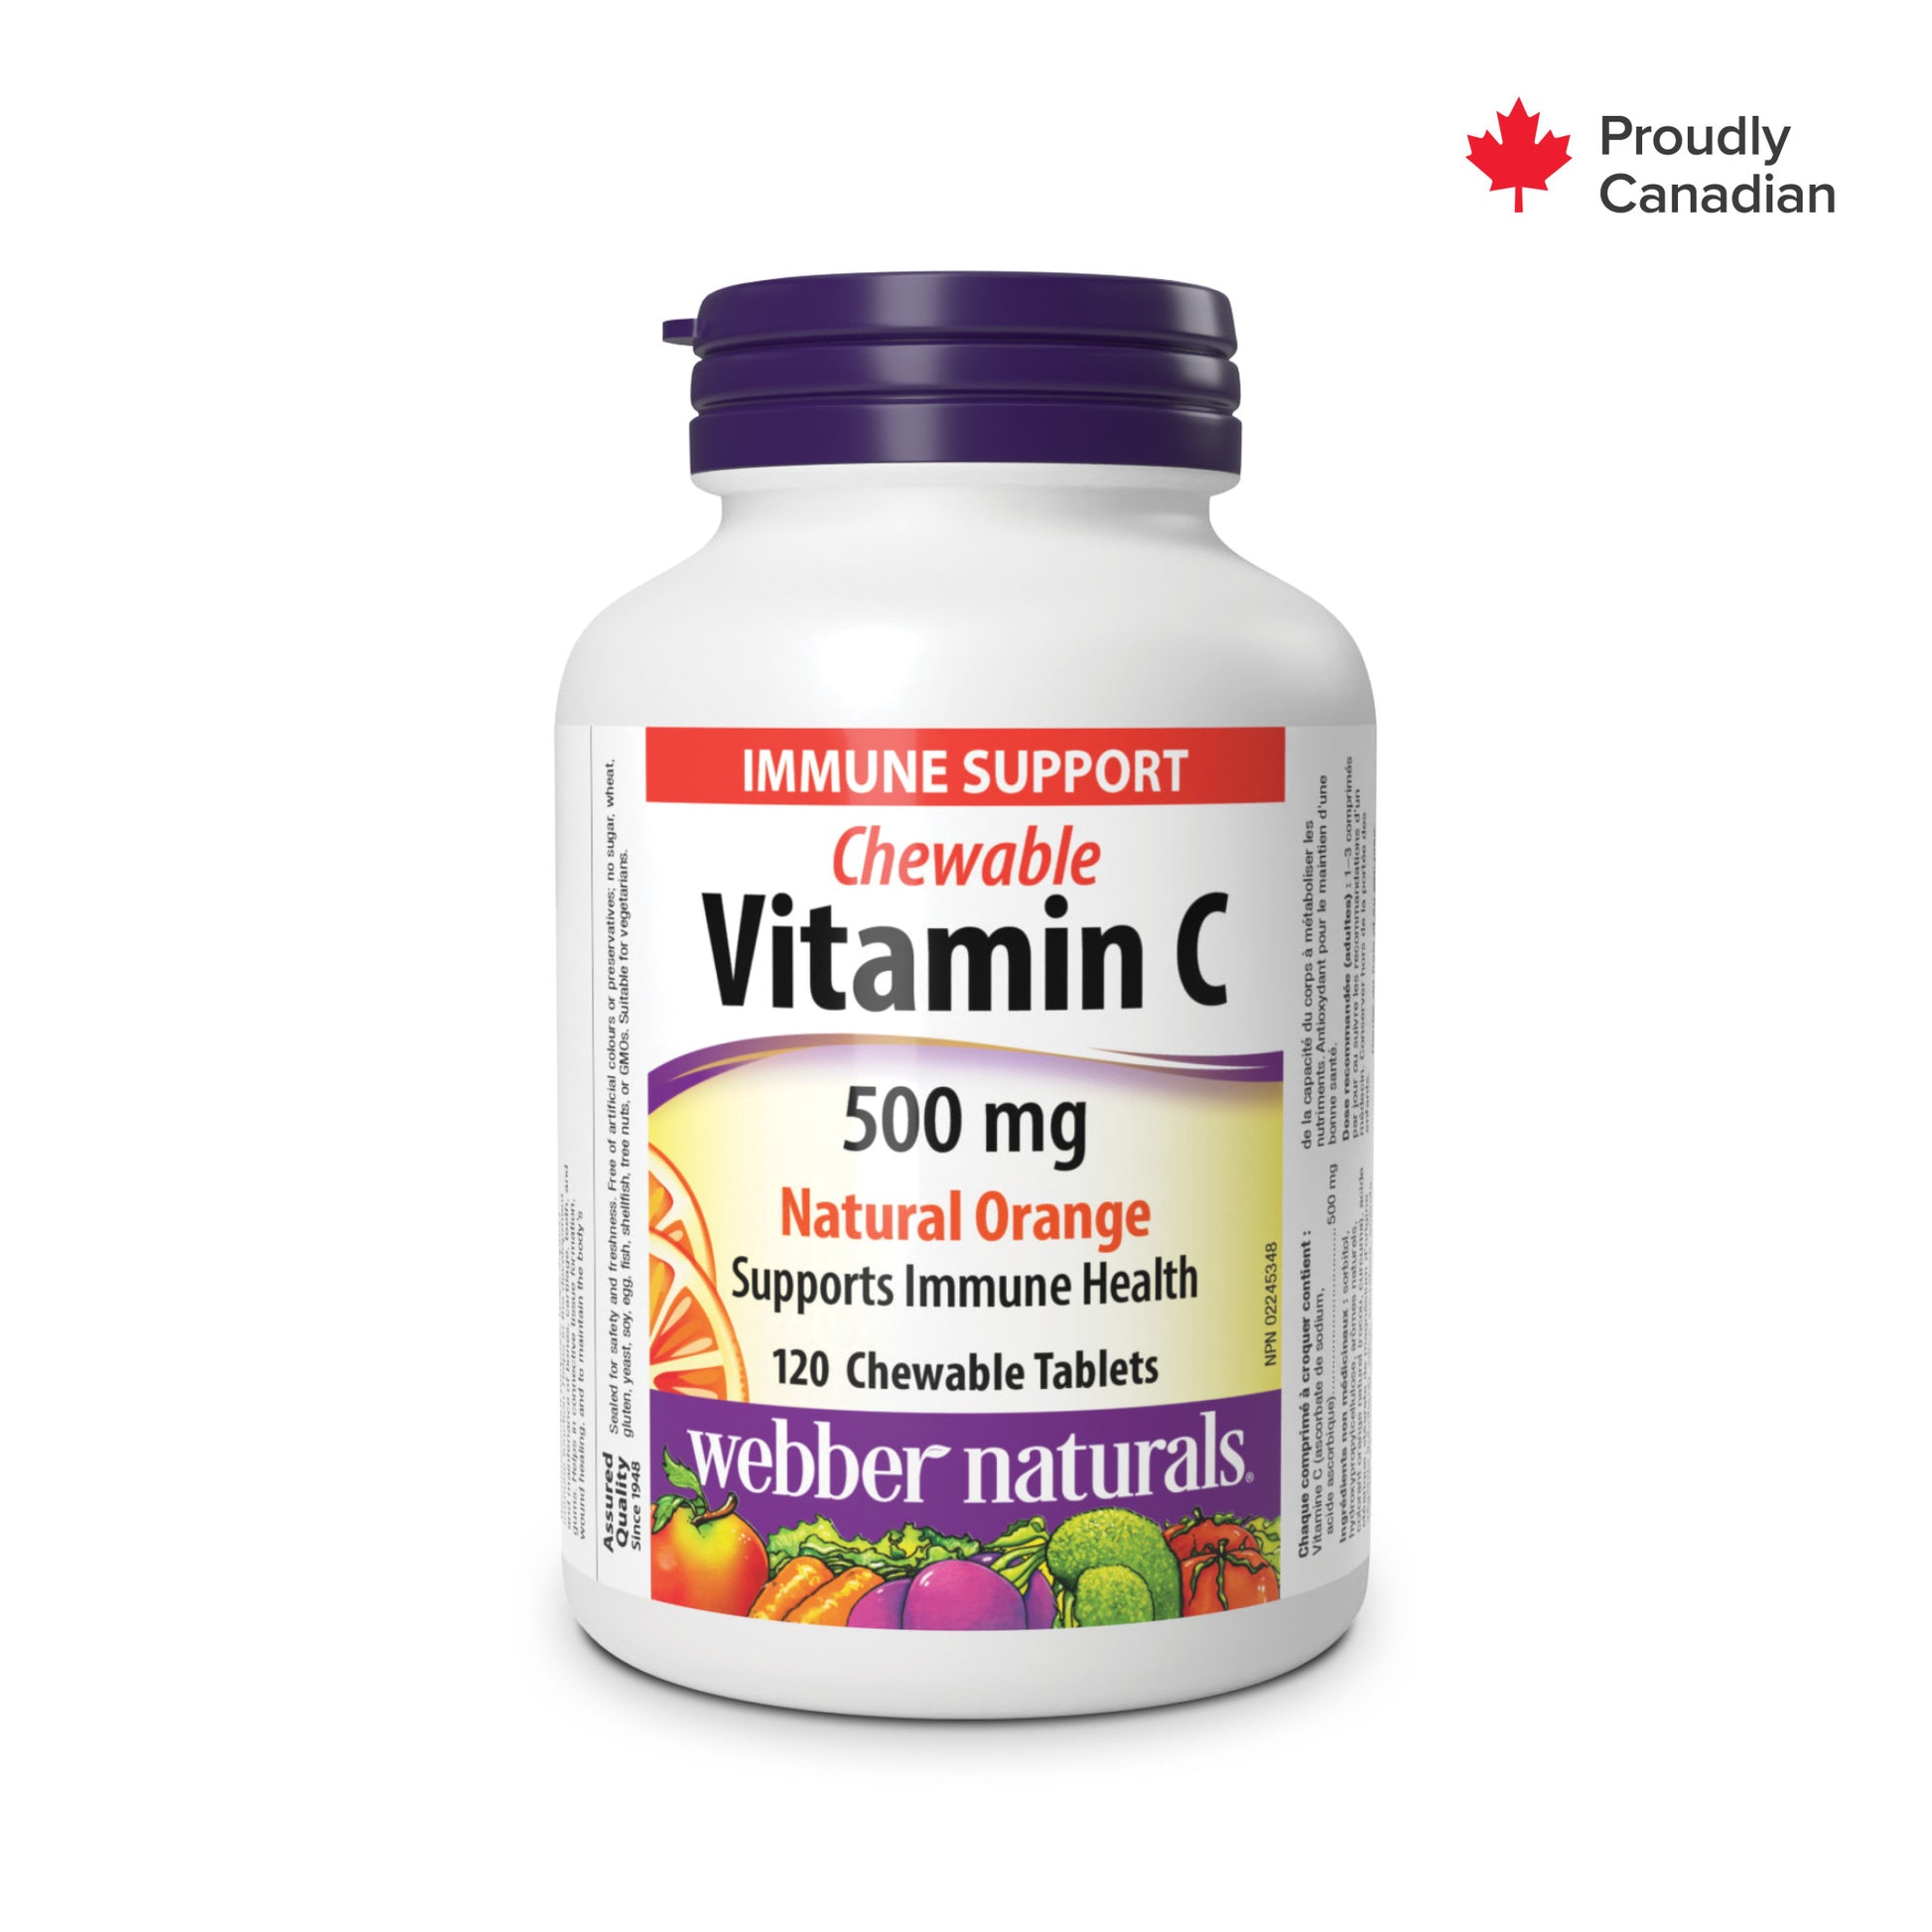 Vitamine C à croquer orange naturelle for Webber Naturals|v|hi-res|WN3588